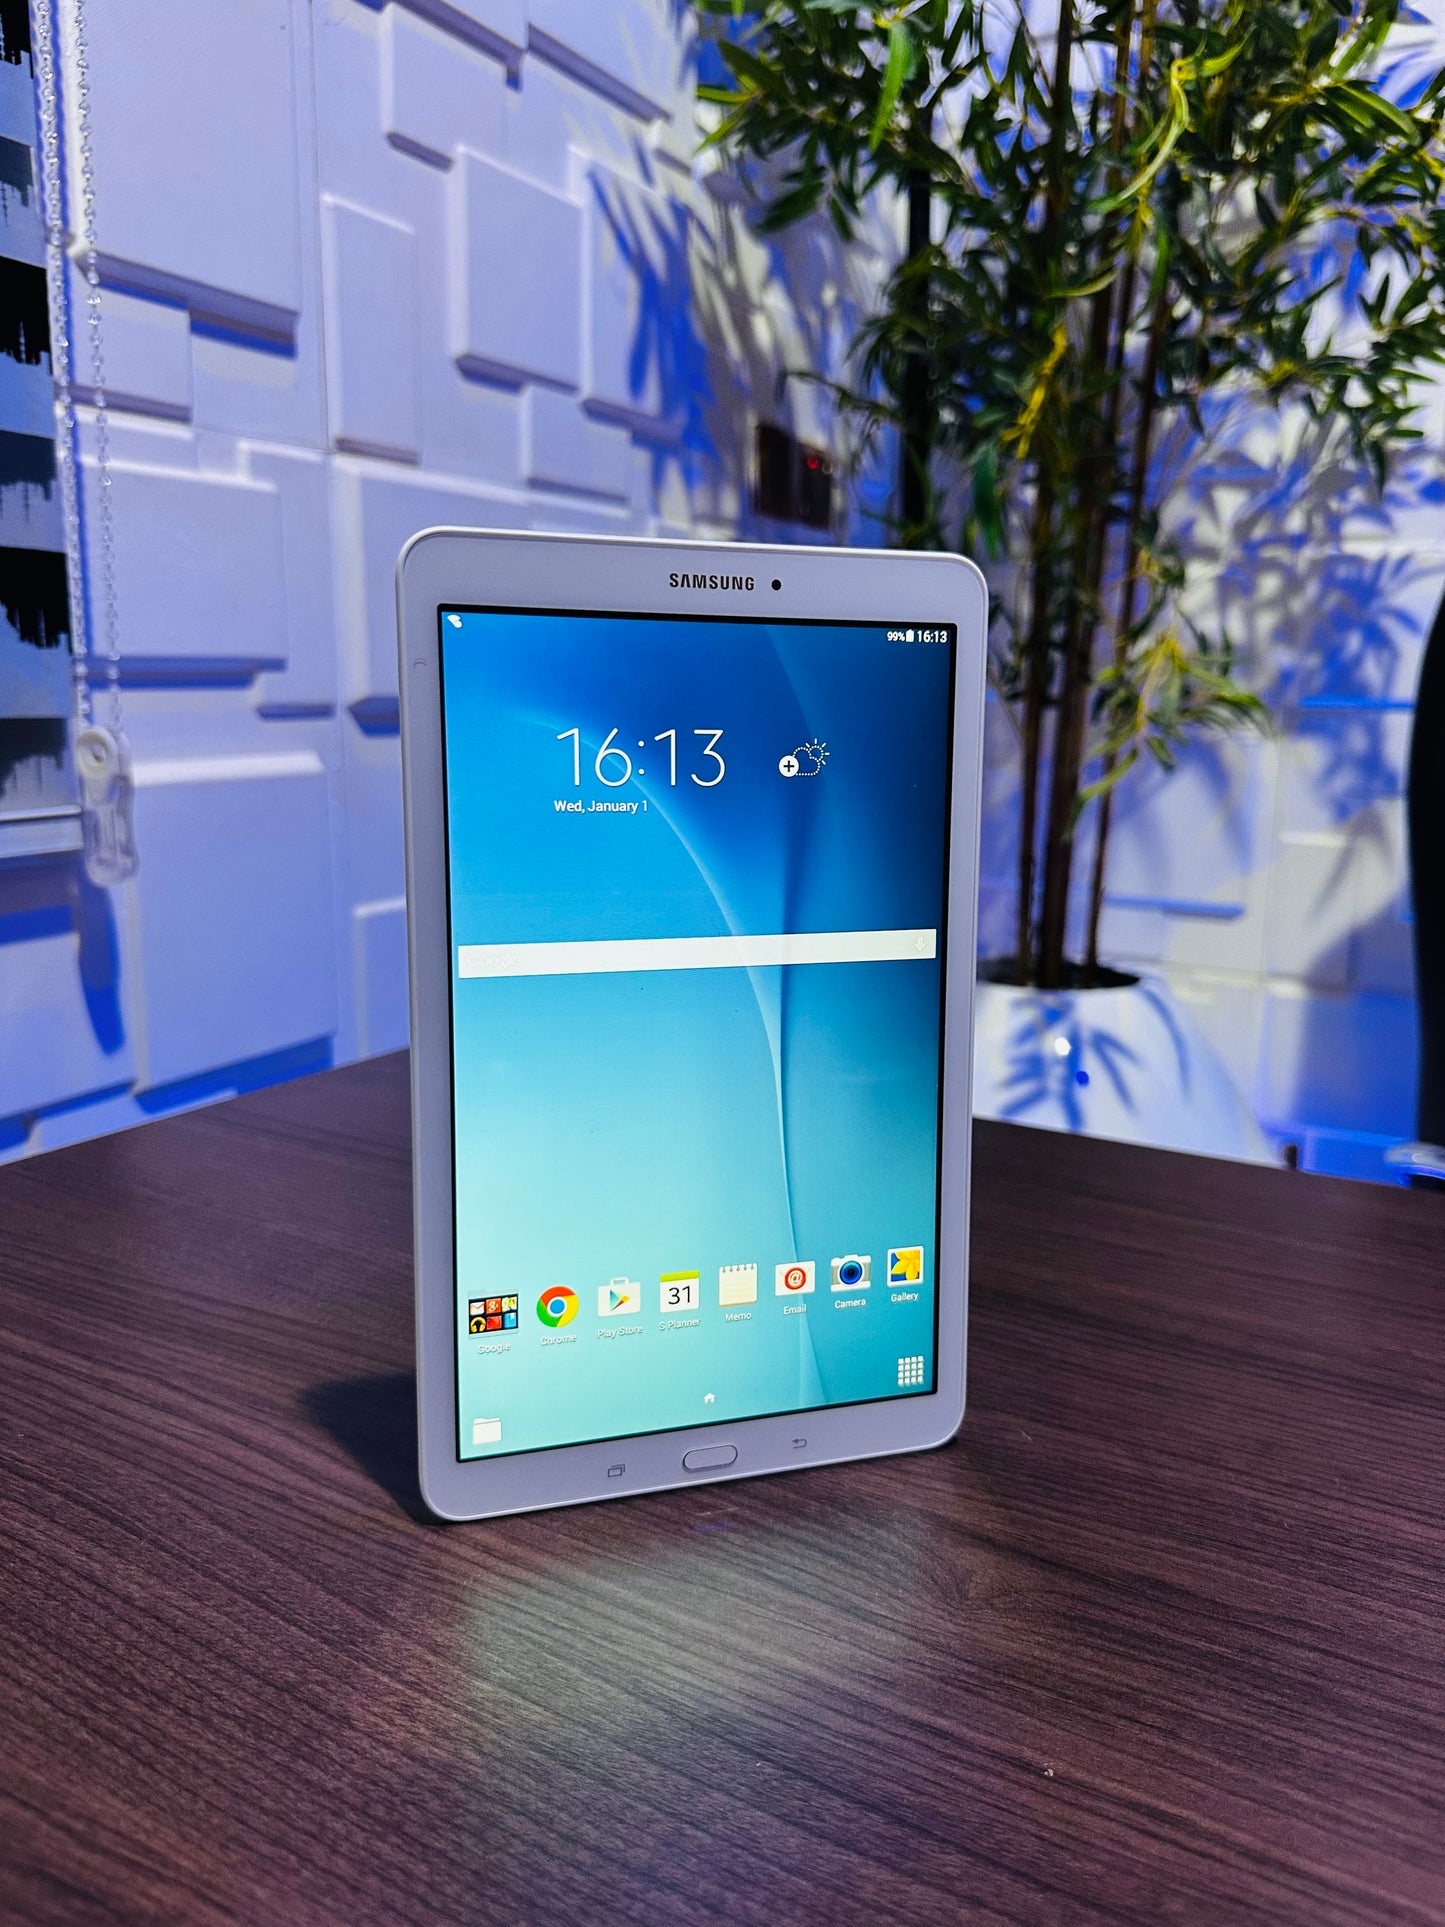 Samsung Galaxy Tab E SM-T560 - 8GB - White